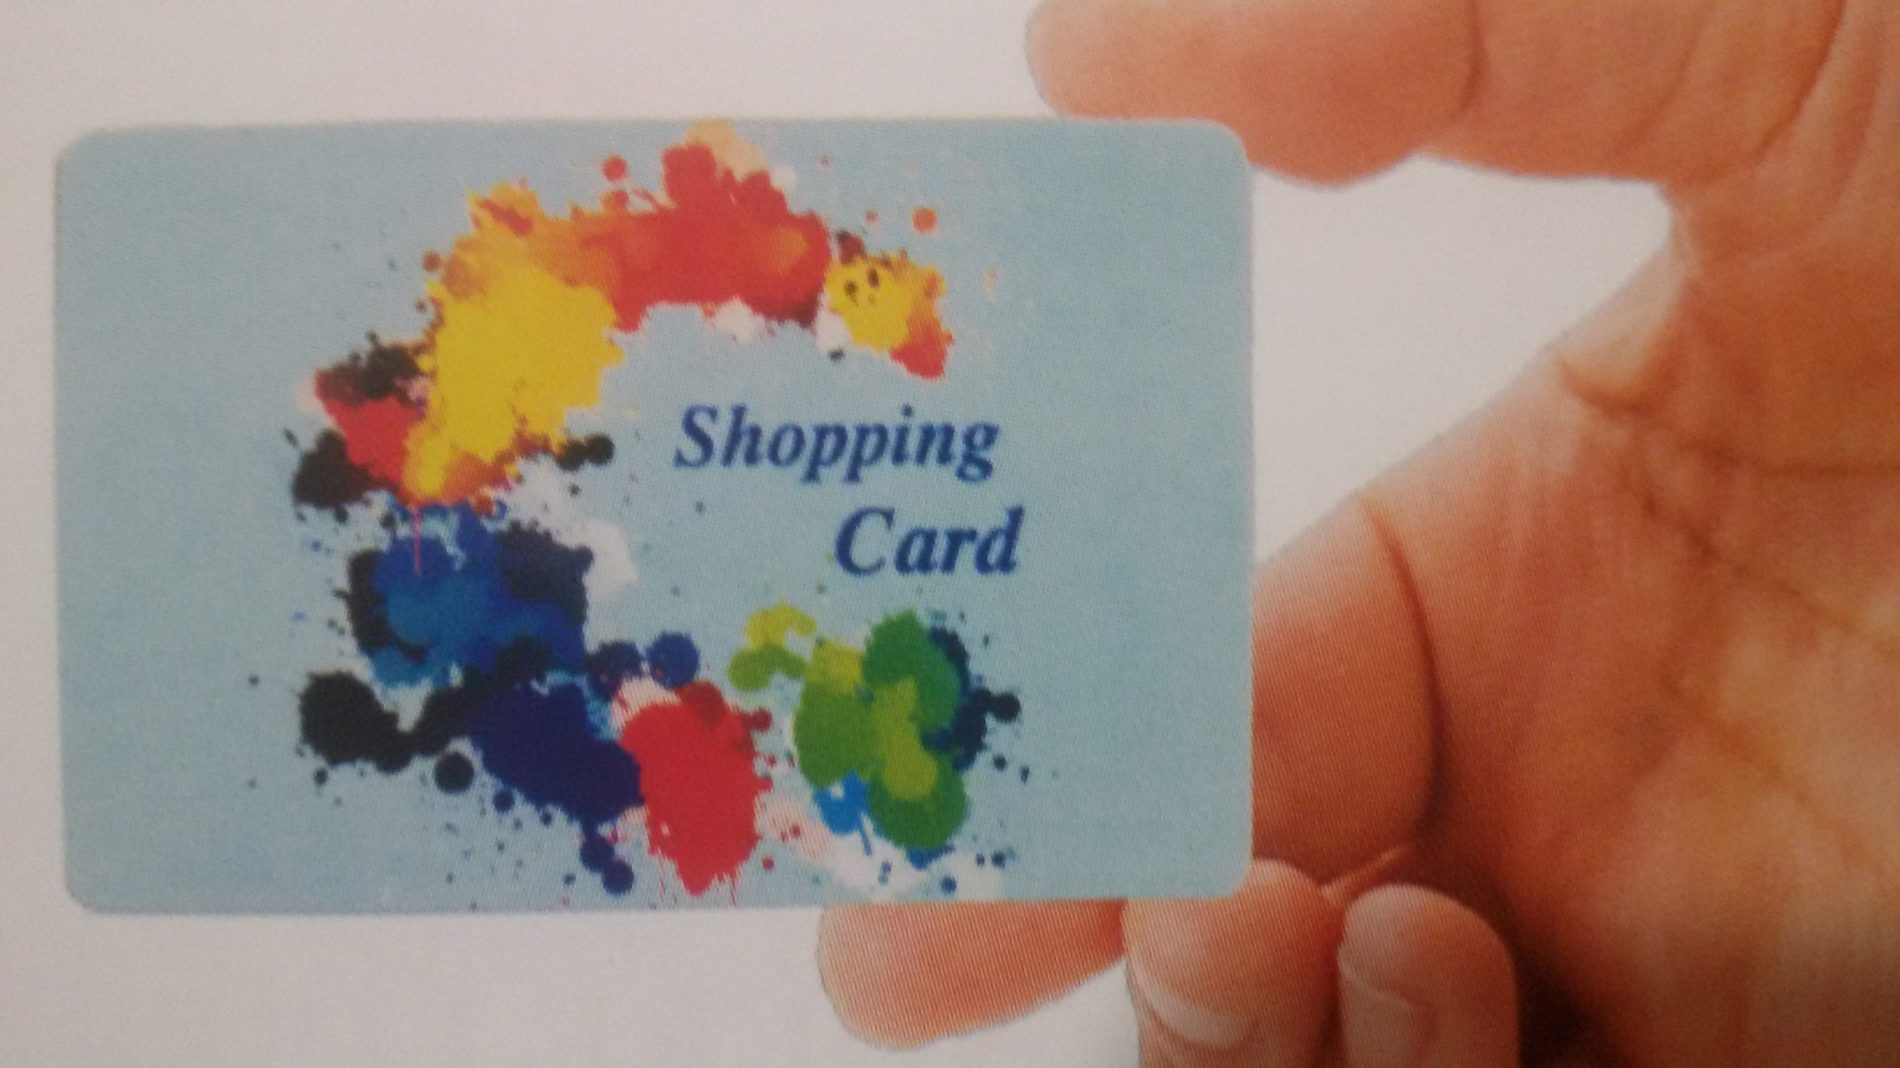 Se spendi la carta fedeltà “Shopping Card” ti fa guadagnare facilmente